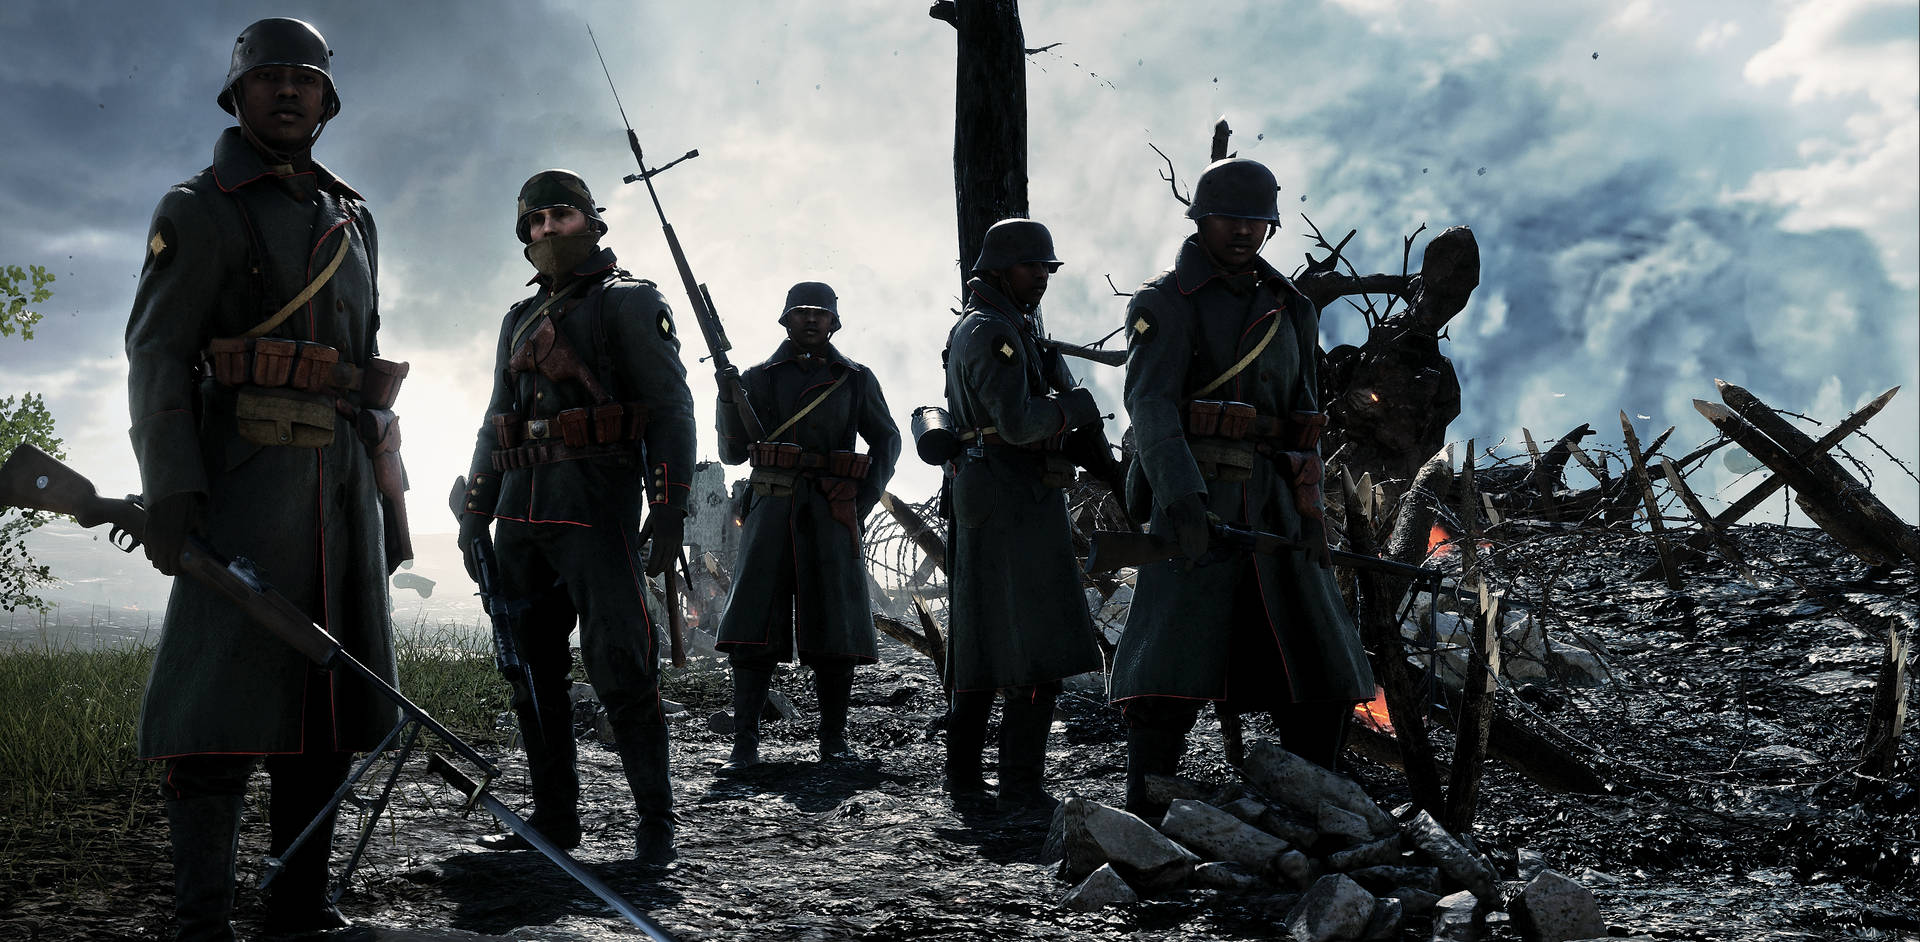 Krigssoldater venter på mission på slagmarken. Wallpaper